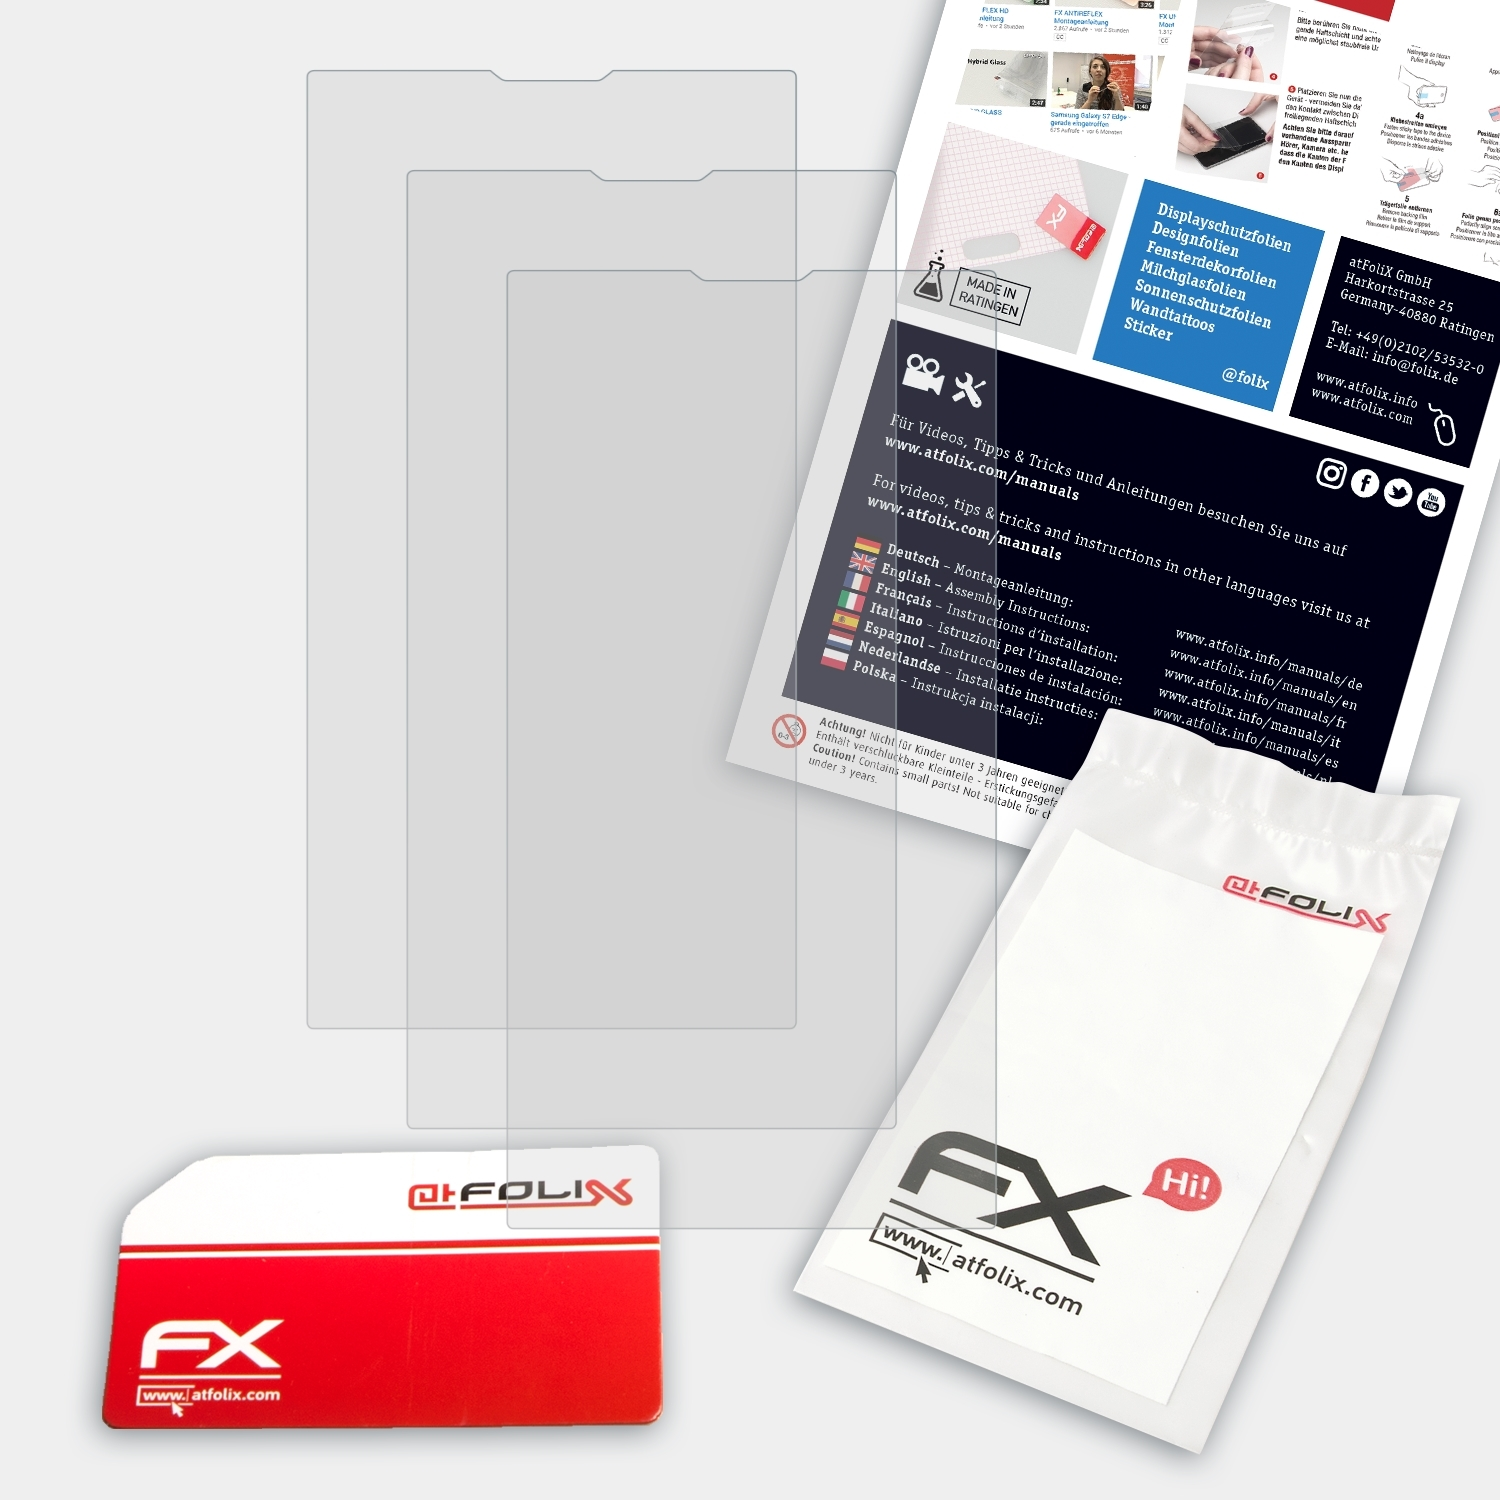 ATFOLIX 3x FX-Antireflex Displayschutz(für Archos 50b Oxygen)